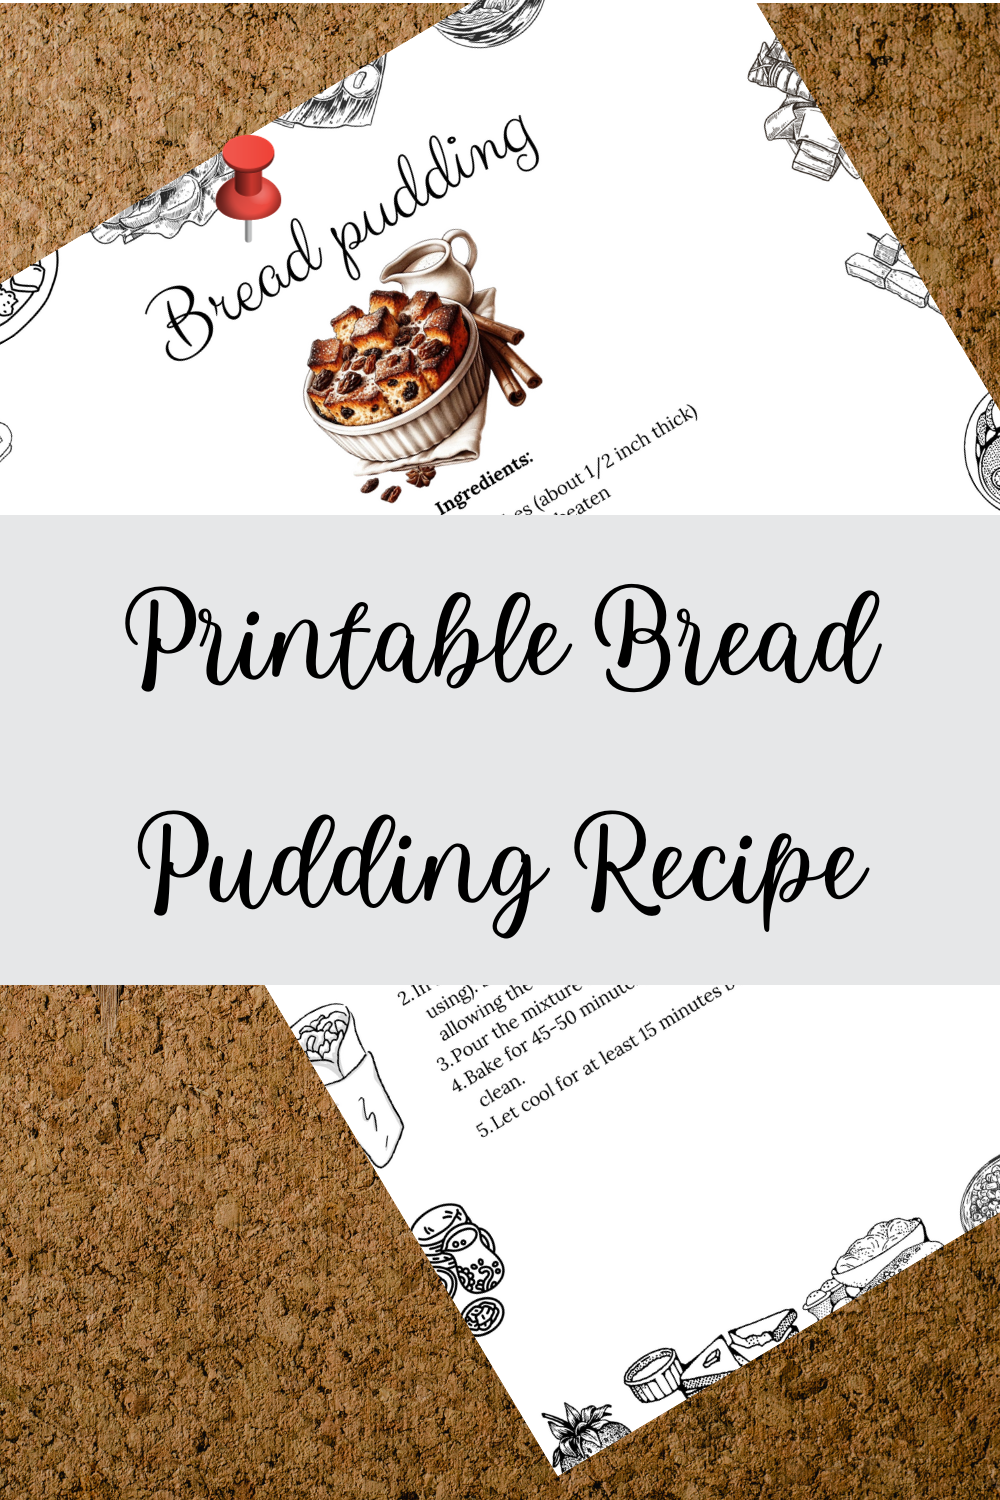 Printable Bread Pudding Recipe